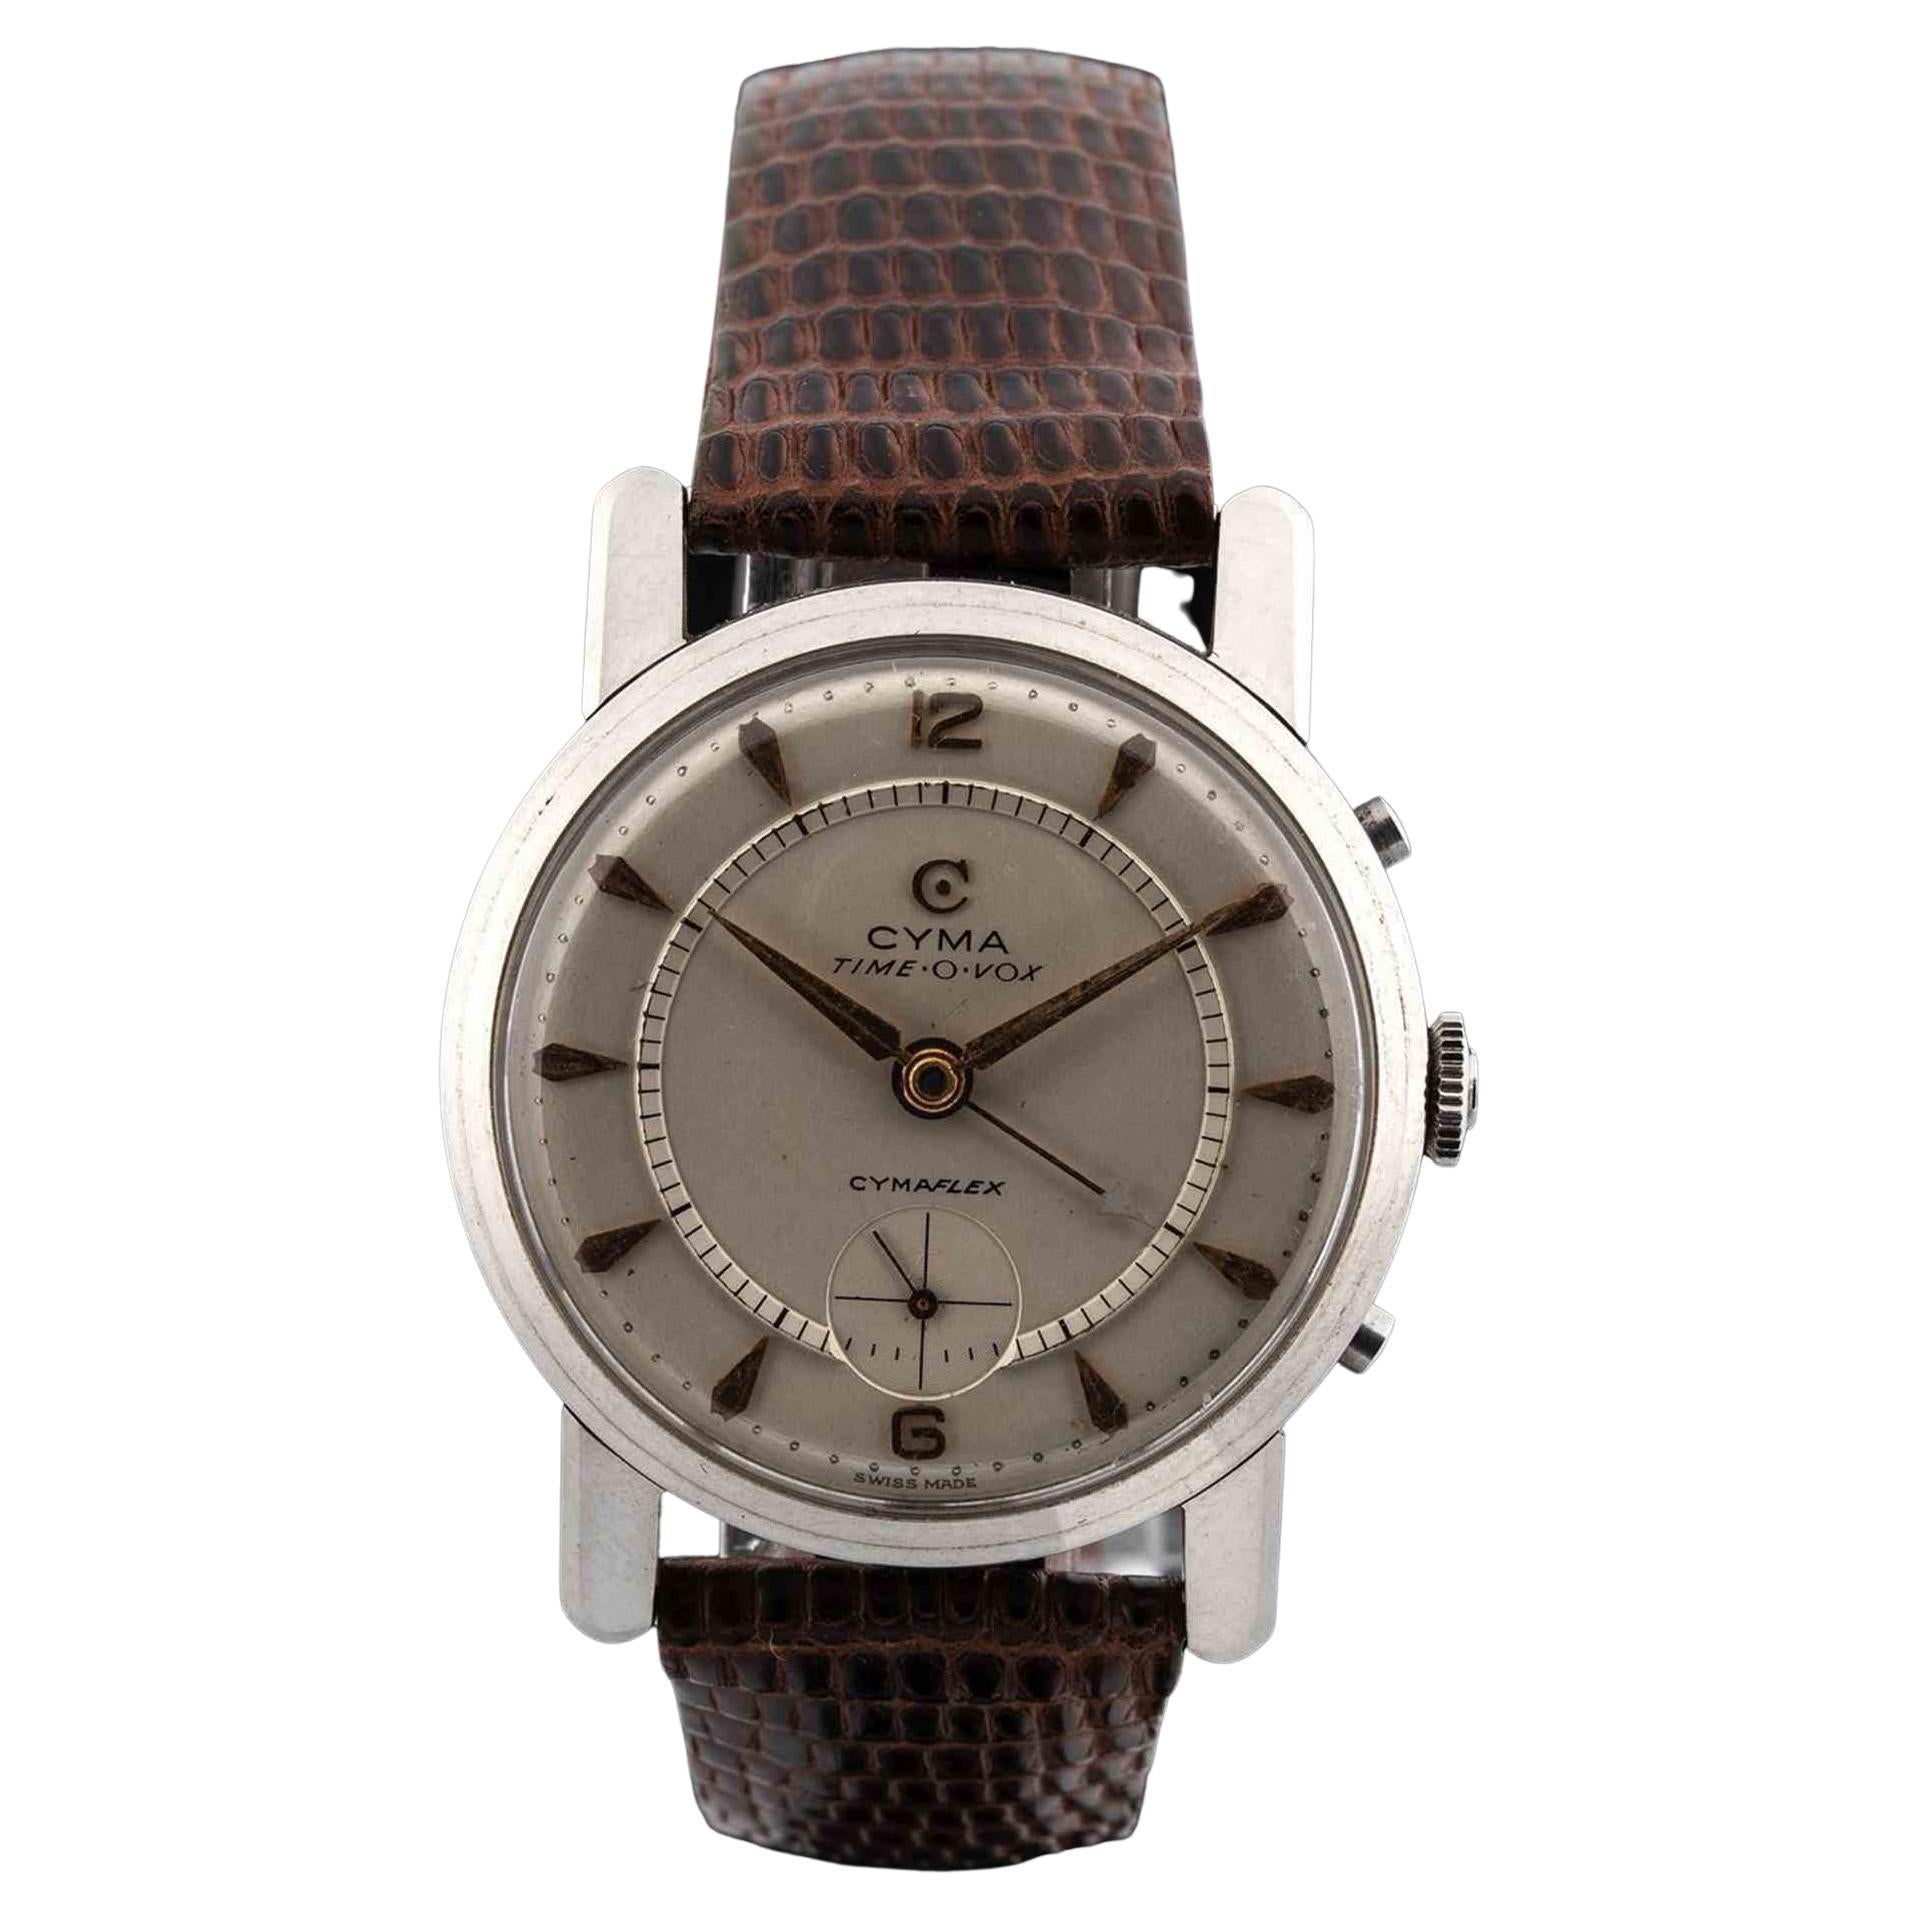 Cyma Time-O-Vox, Cymaflex, Watch 1950s For Sale